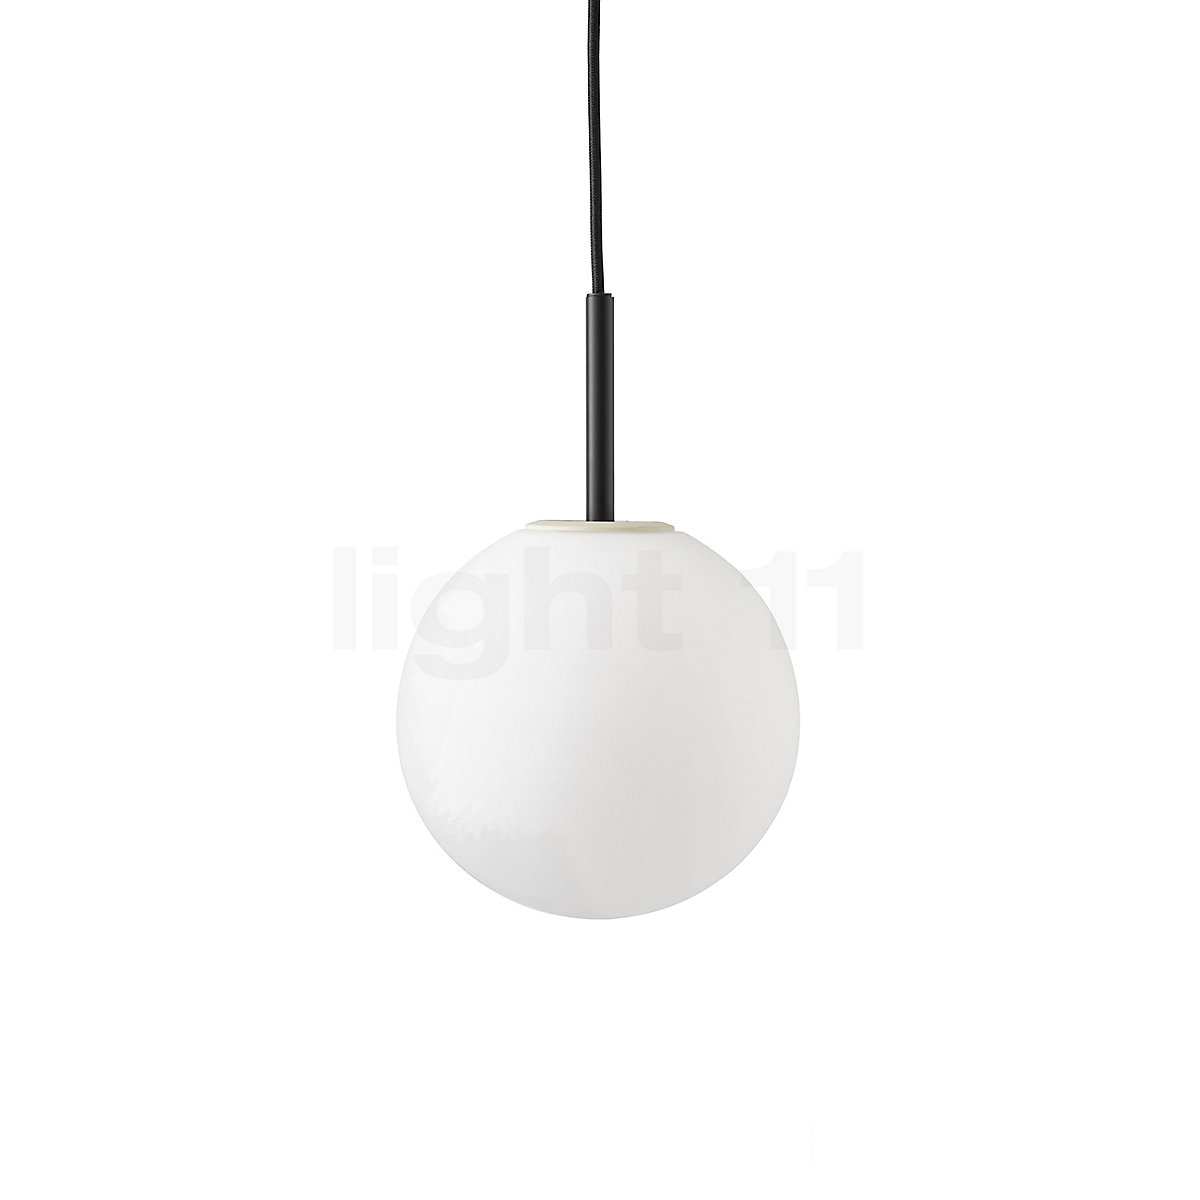 hebben zich vergist sofa pleegouders Menu TR Bulb Hanglamp kopen bij light11.nl